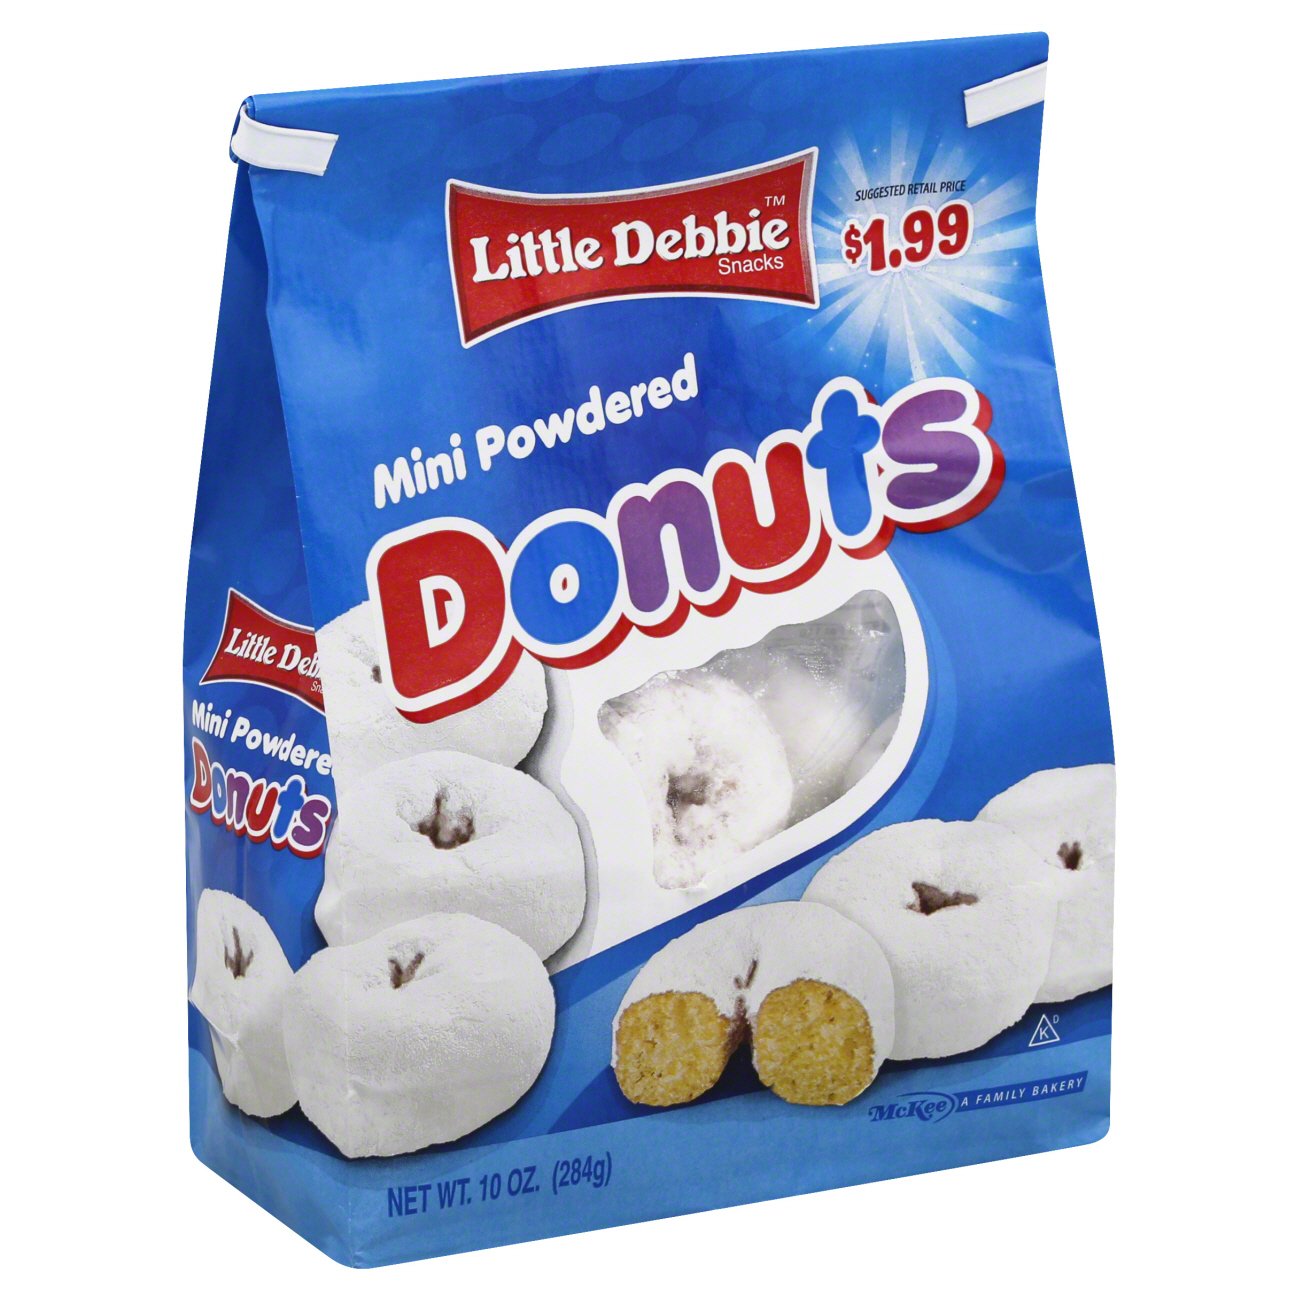 Mini Powdered Donuts